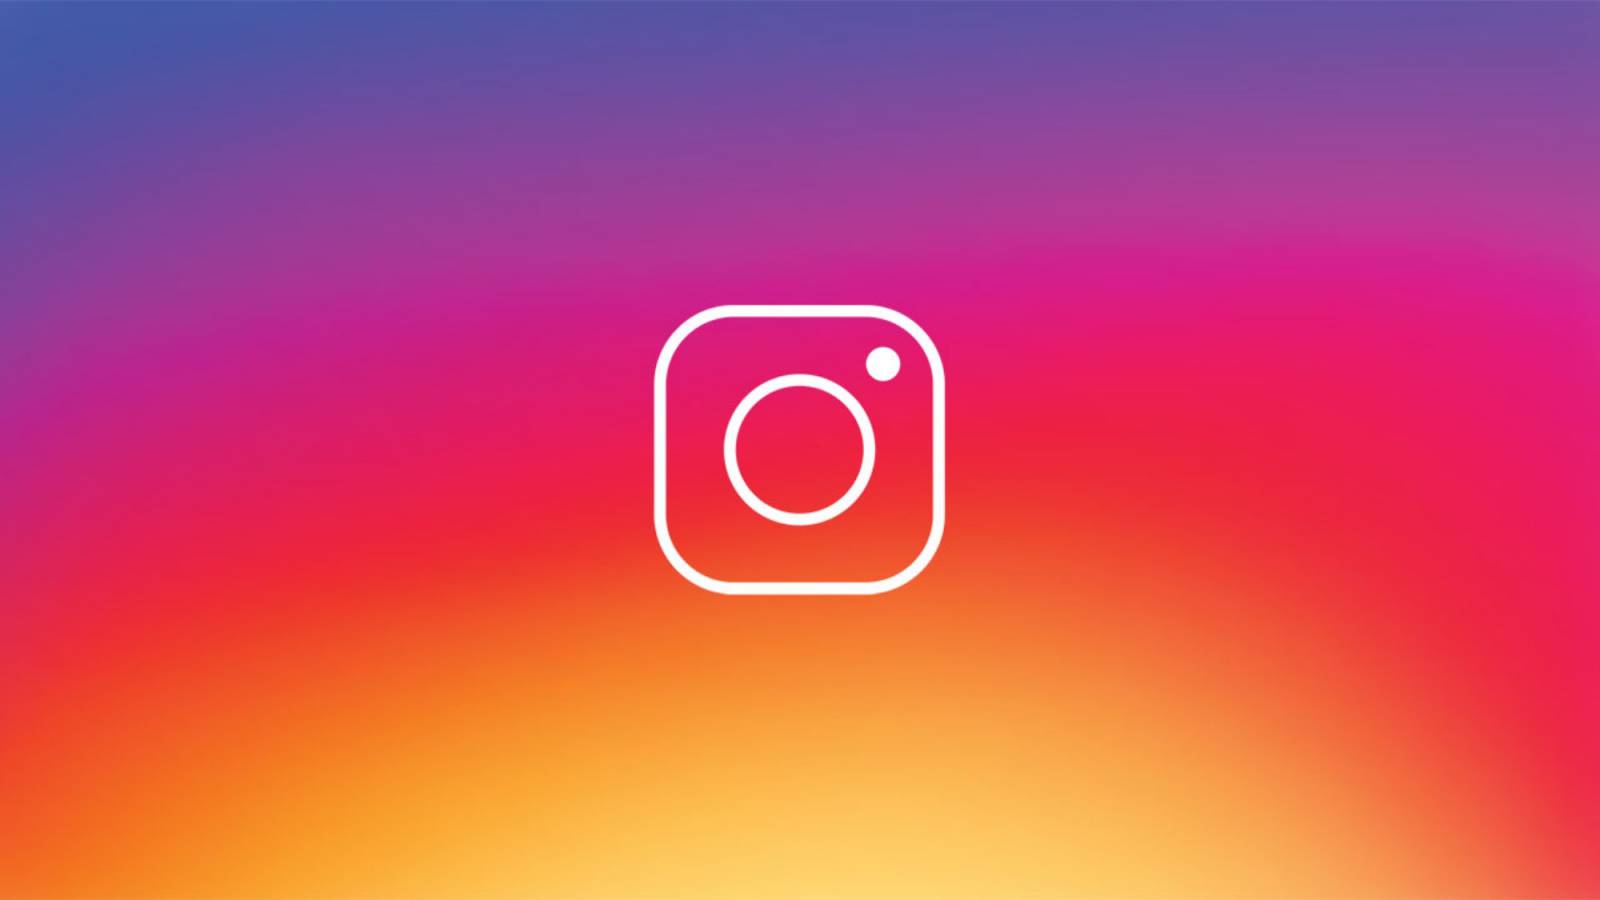 Instagramin uusi päivitys julkaistiin puhelimille tänään